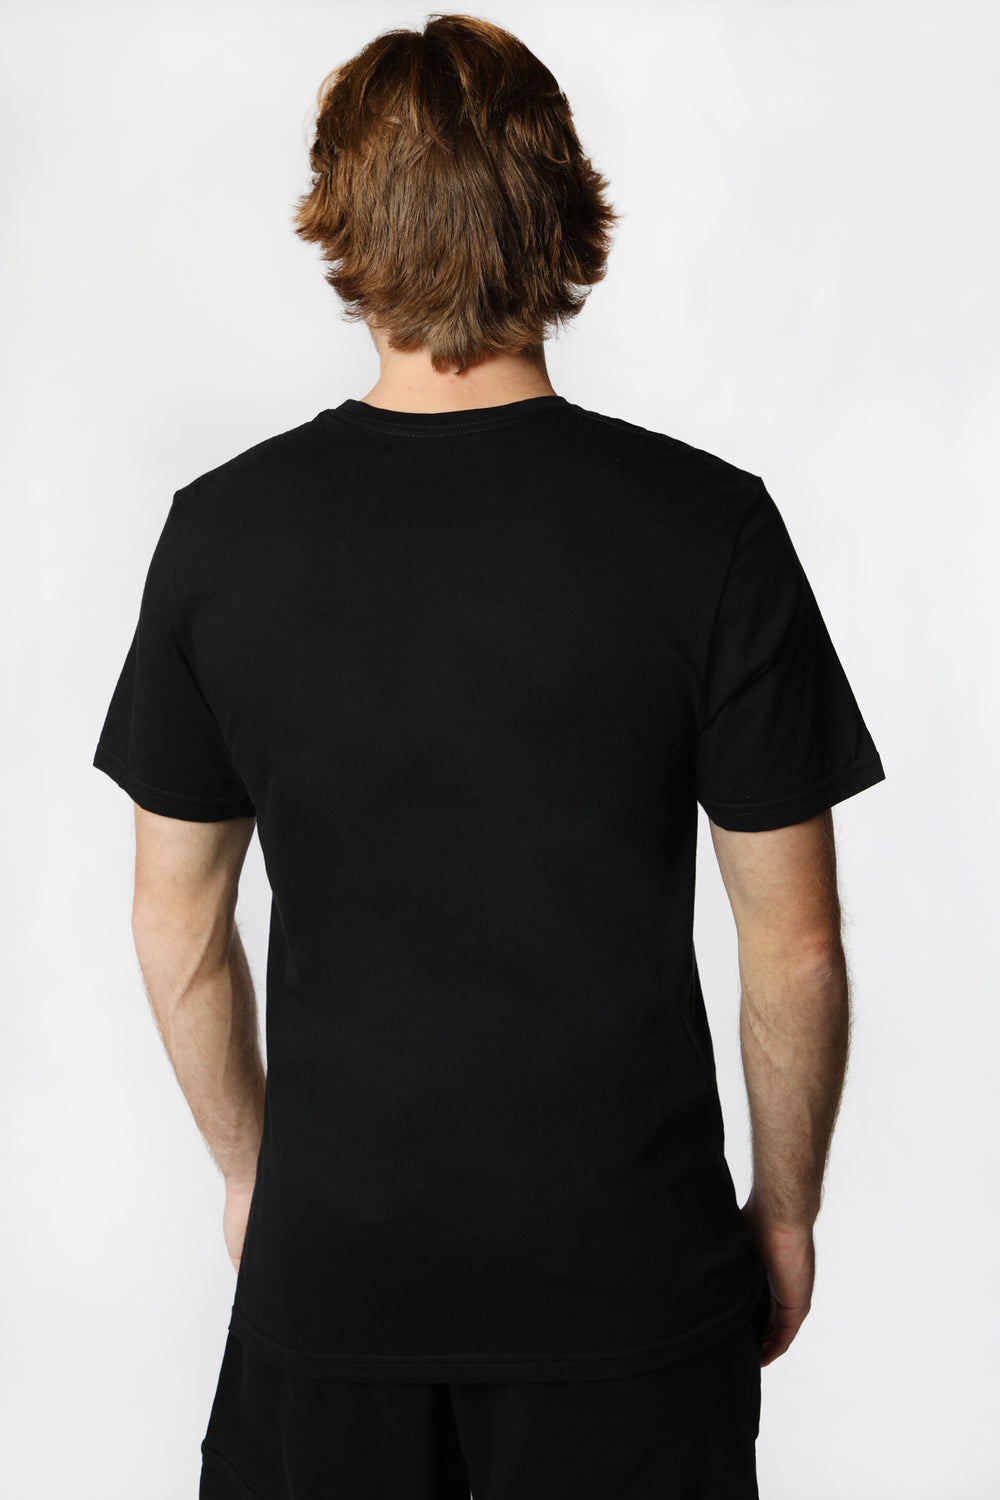 T-Shirt Imprimé Evil Dead 2 Homme Noir